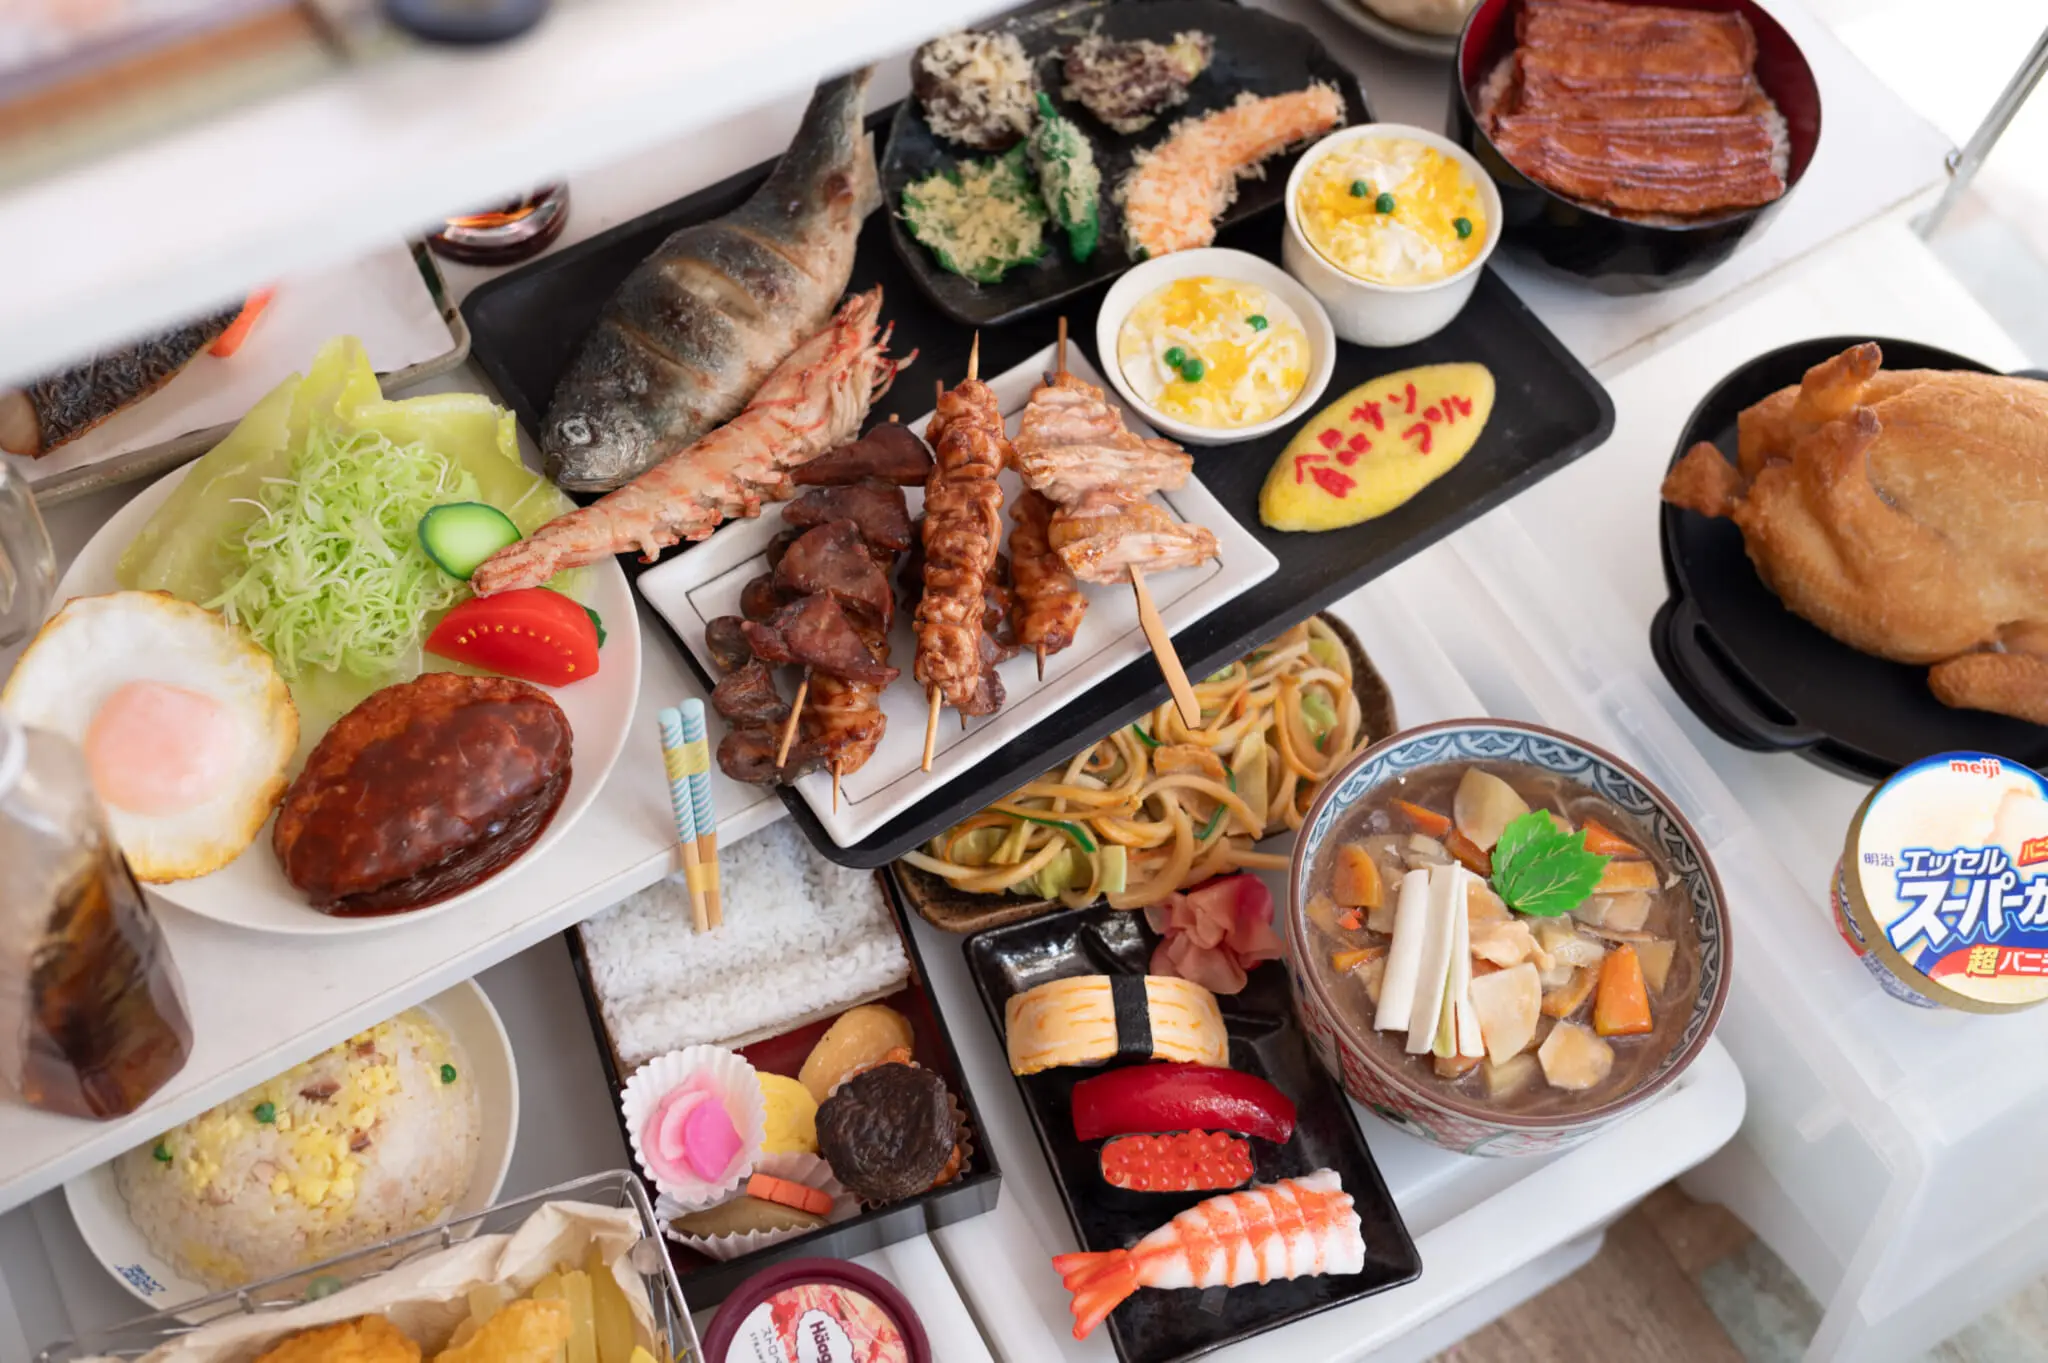 Food-Samples-Tokyo-Weekender-2048x1363.jpg.webp